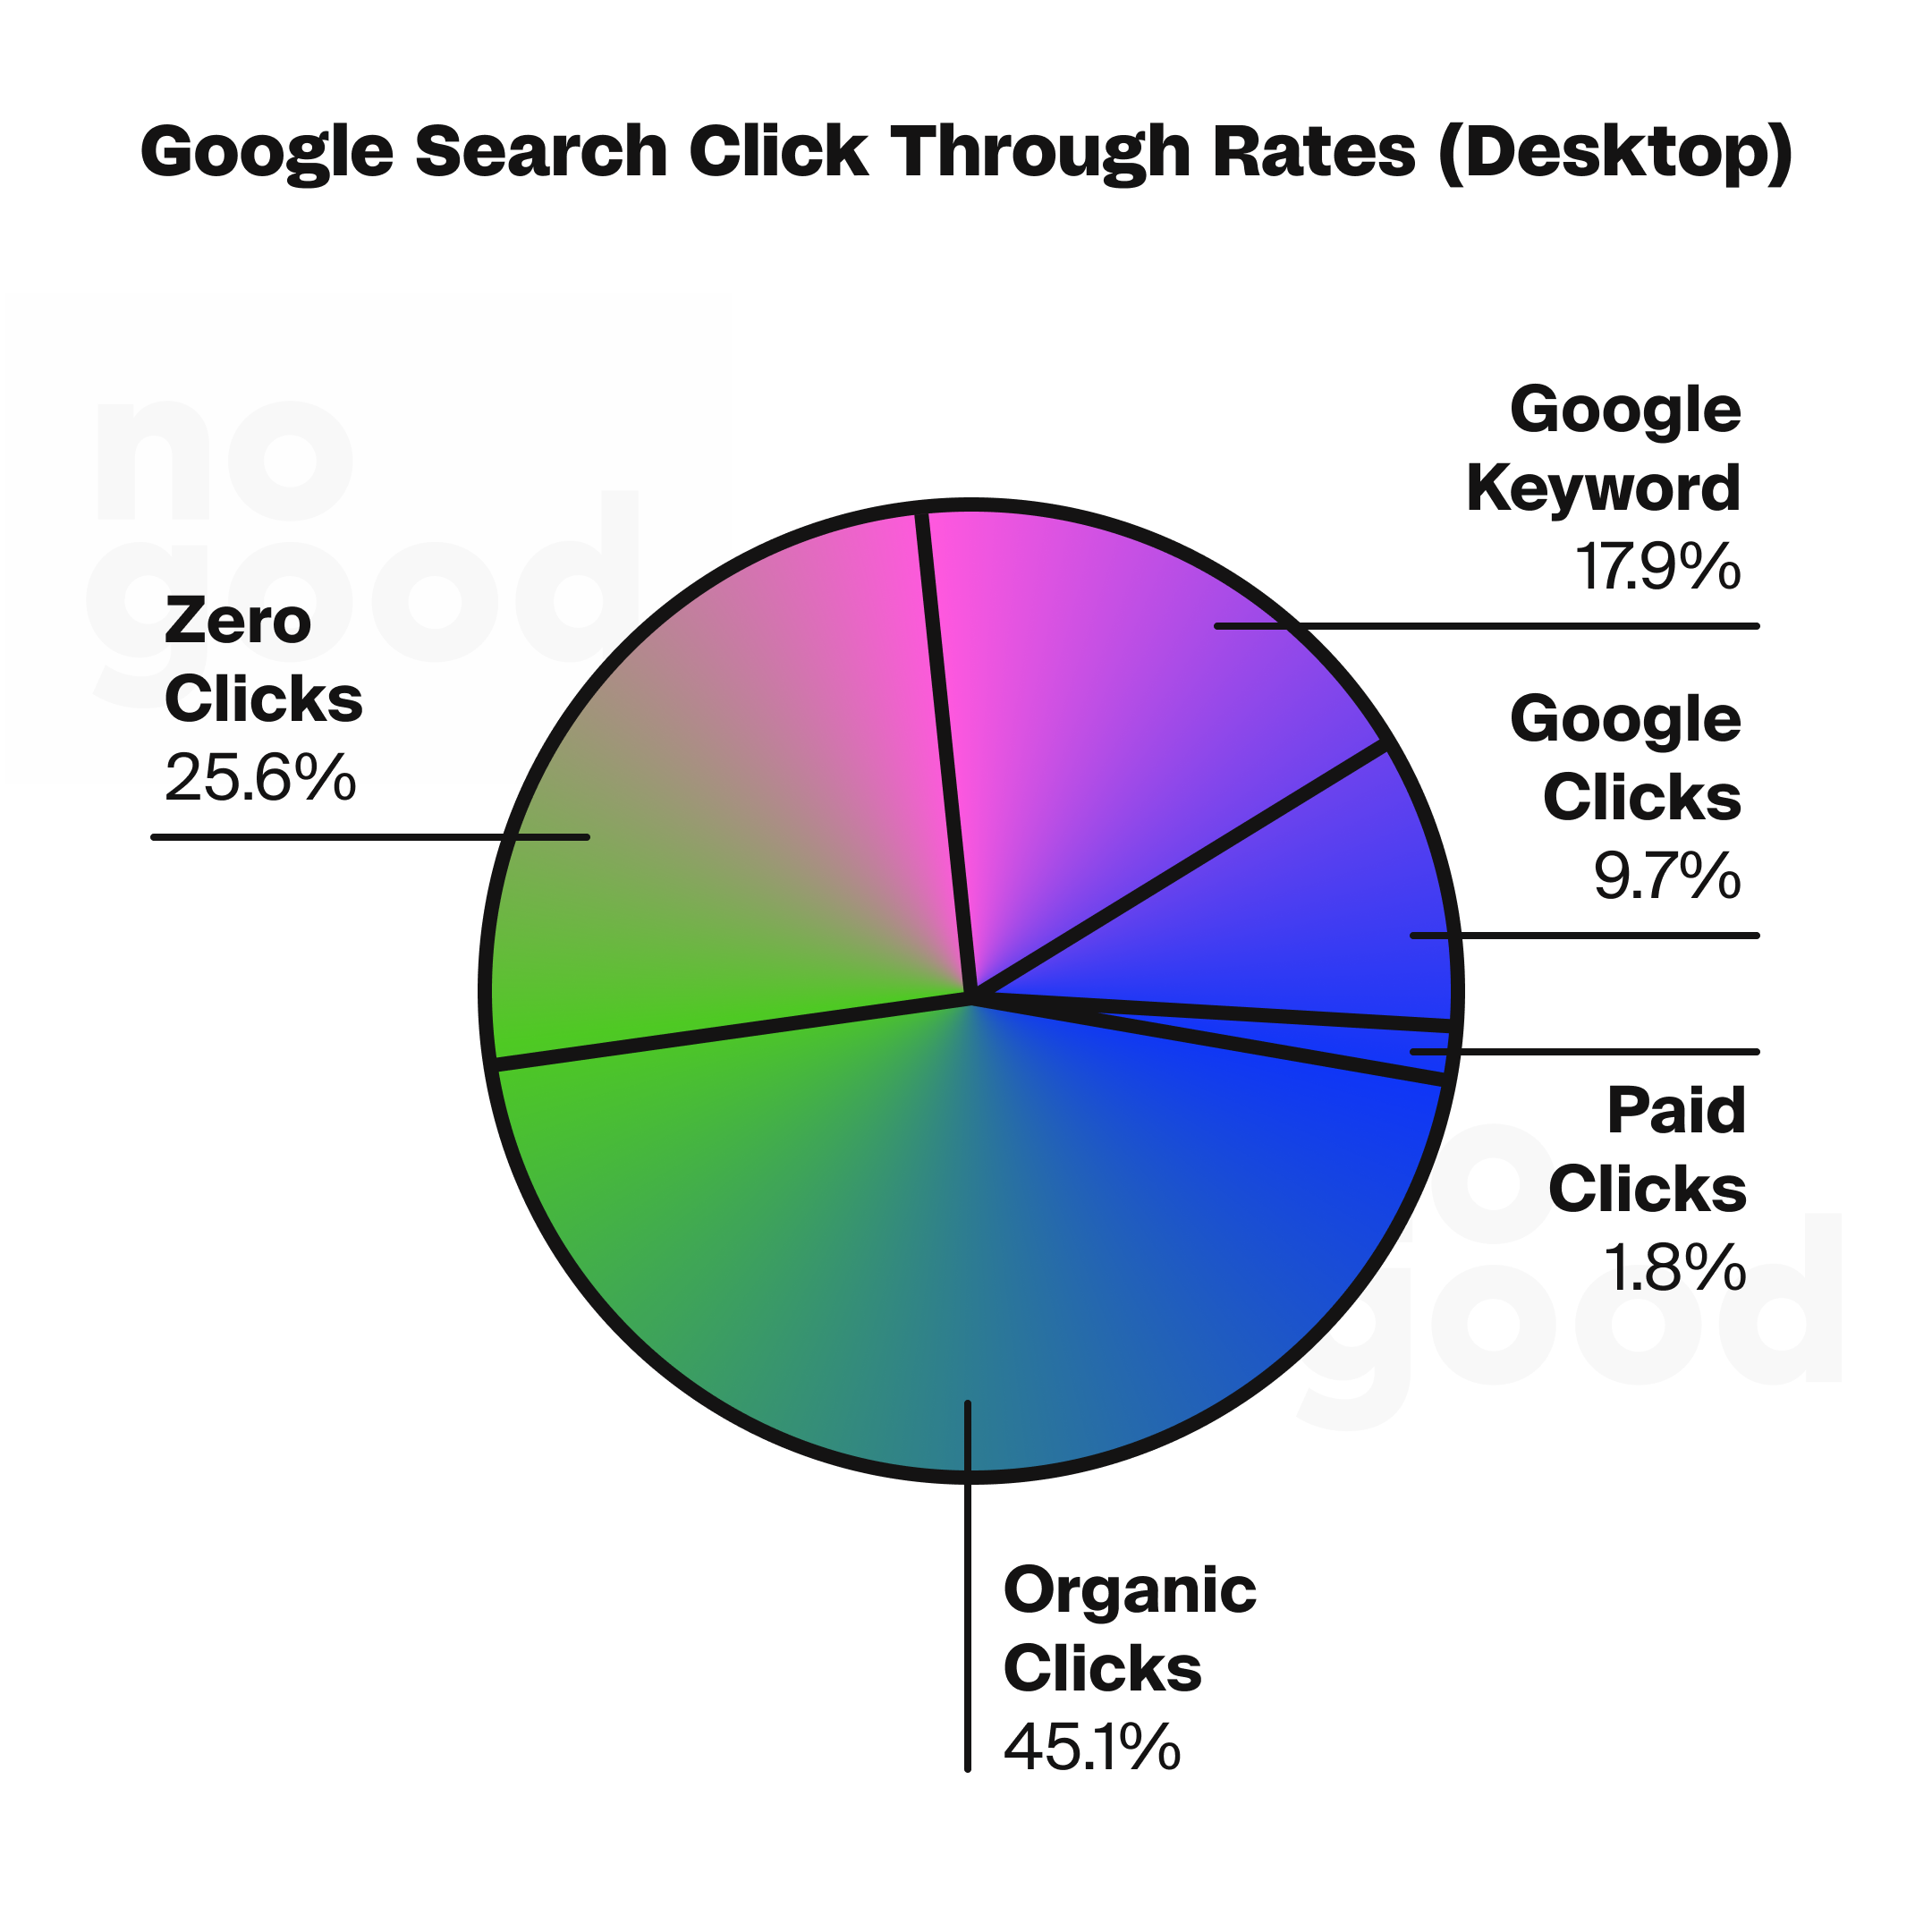 Google search click through rates (desktop)